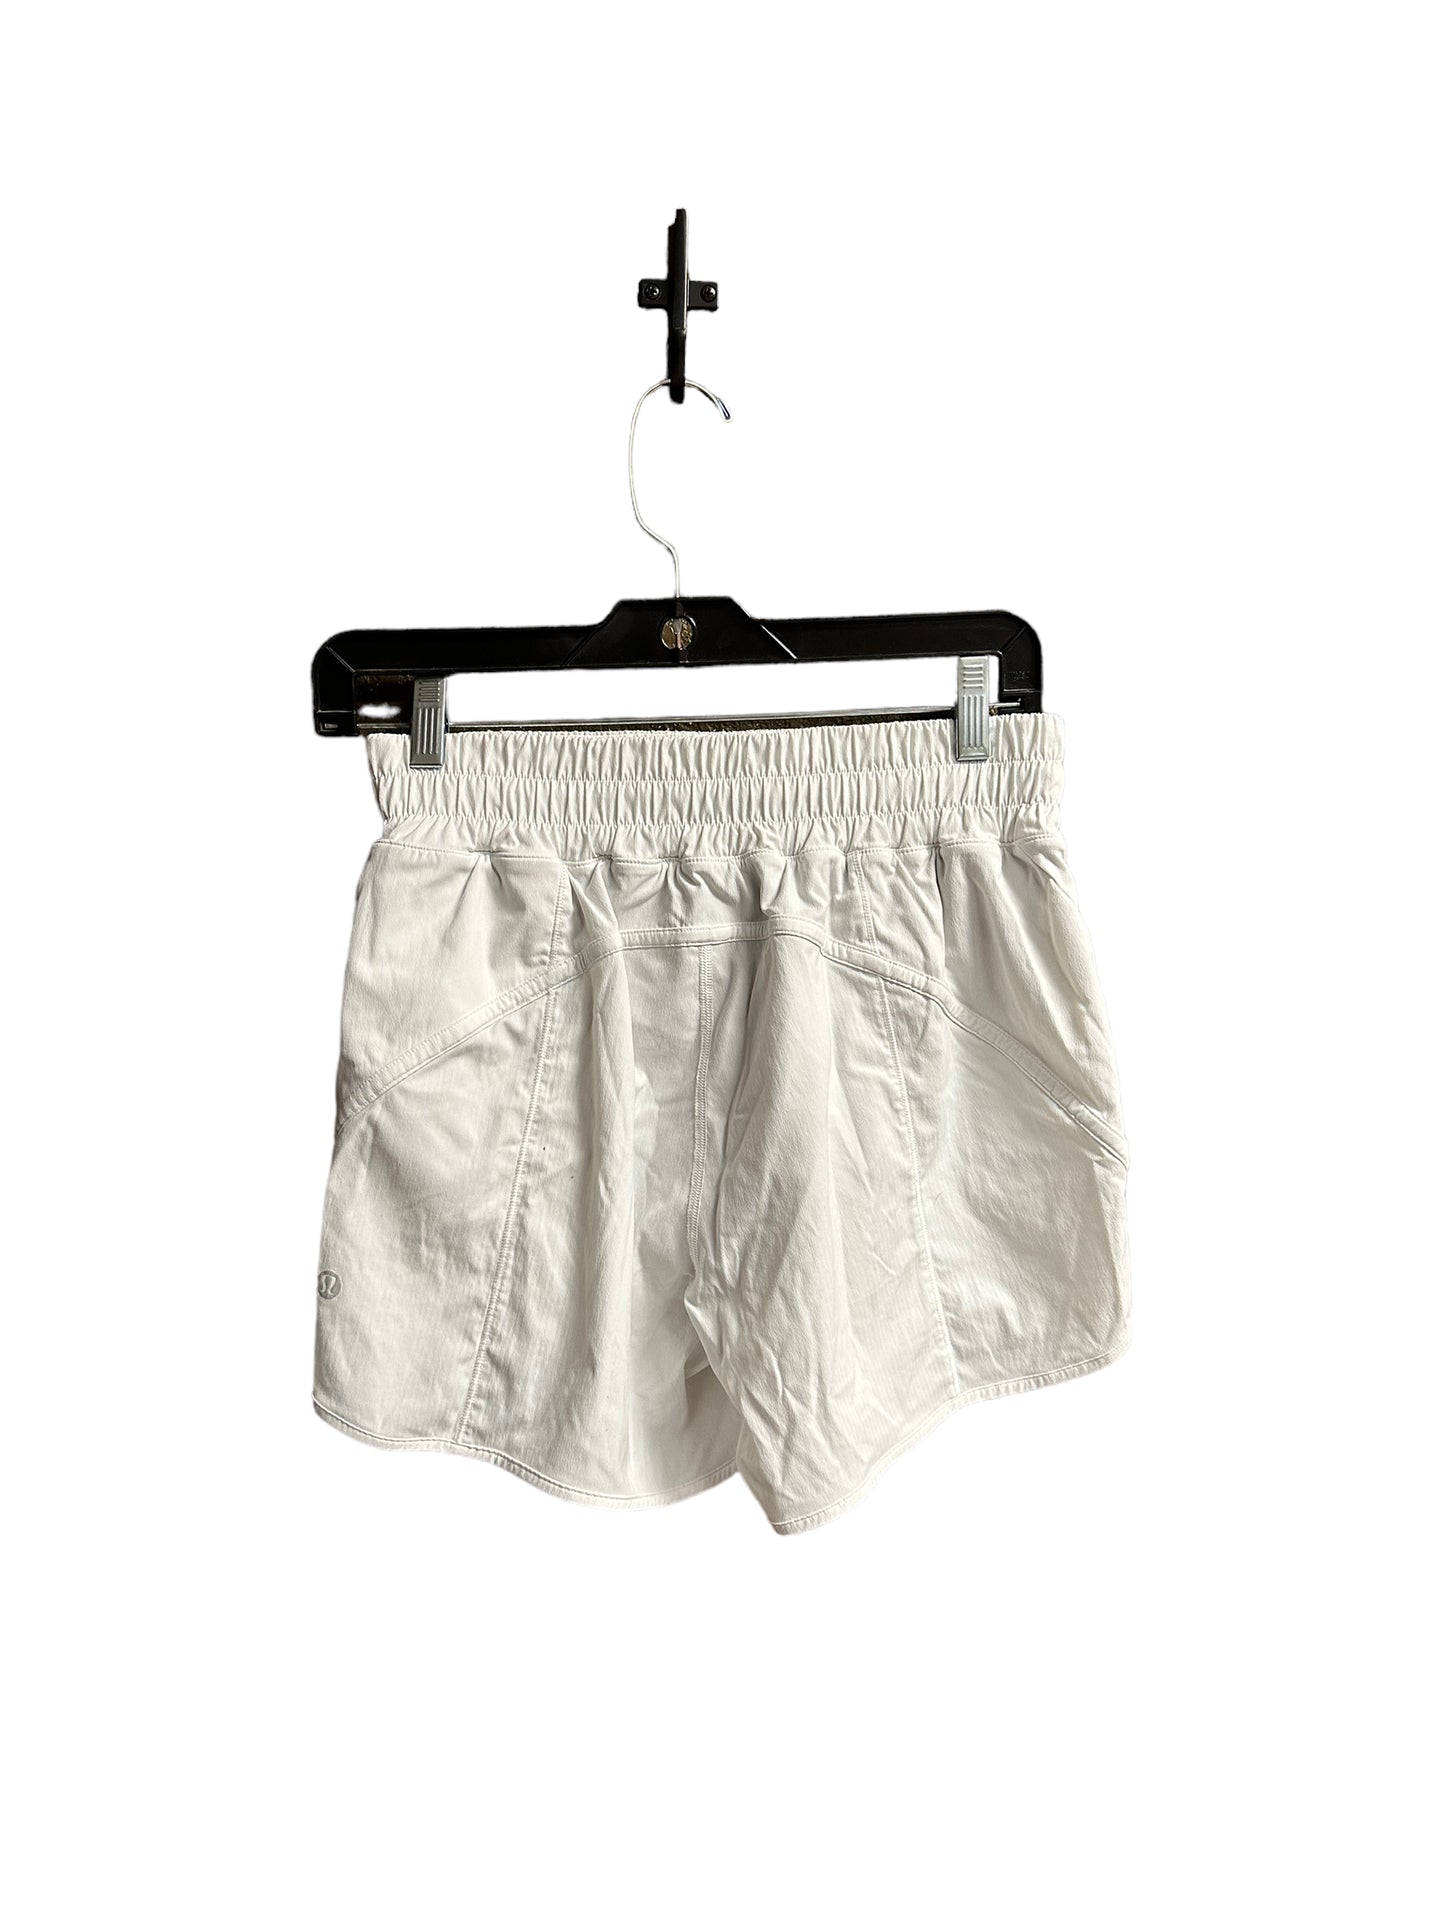 Athletic Shorts By Lululemon  Size: S